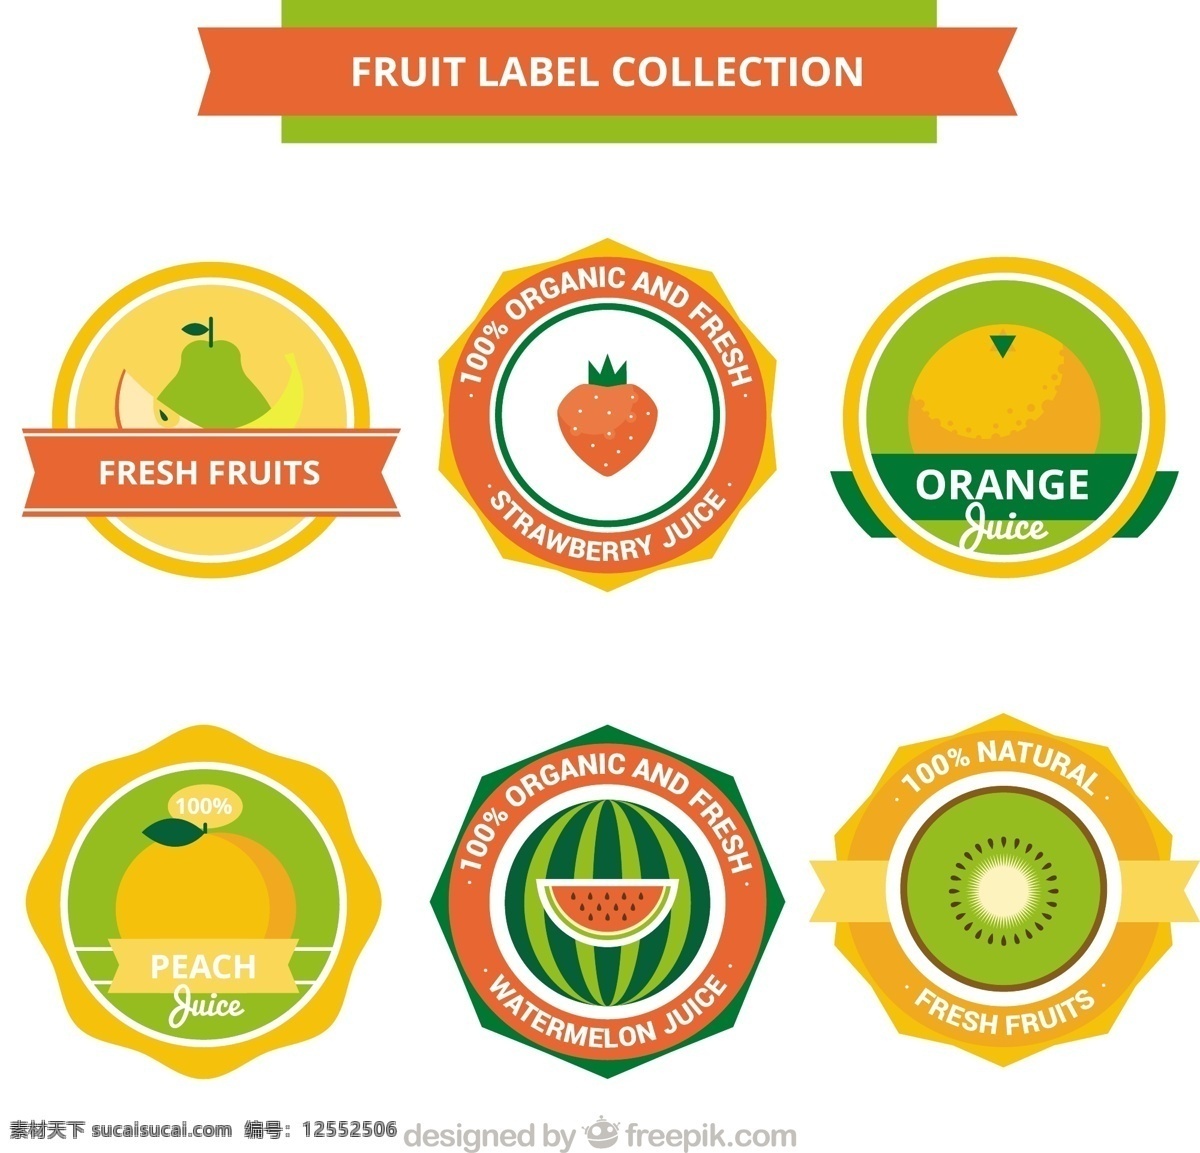 扁平 标签 各种 水果 搭配 采购产品食品 夏天 颜色 橙色 平 圆 自然 健康 平面设计 草莓 贴纸 装饰 吃 健康食品 西瓜